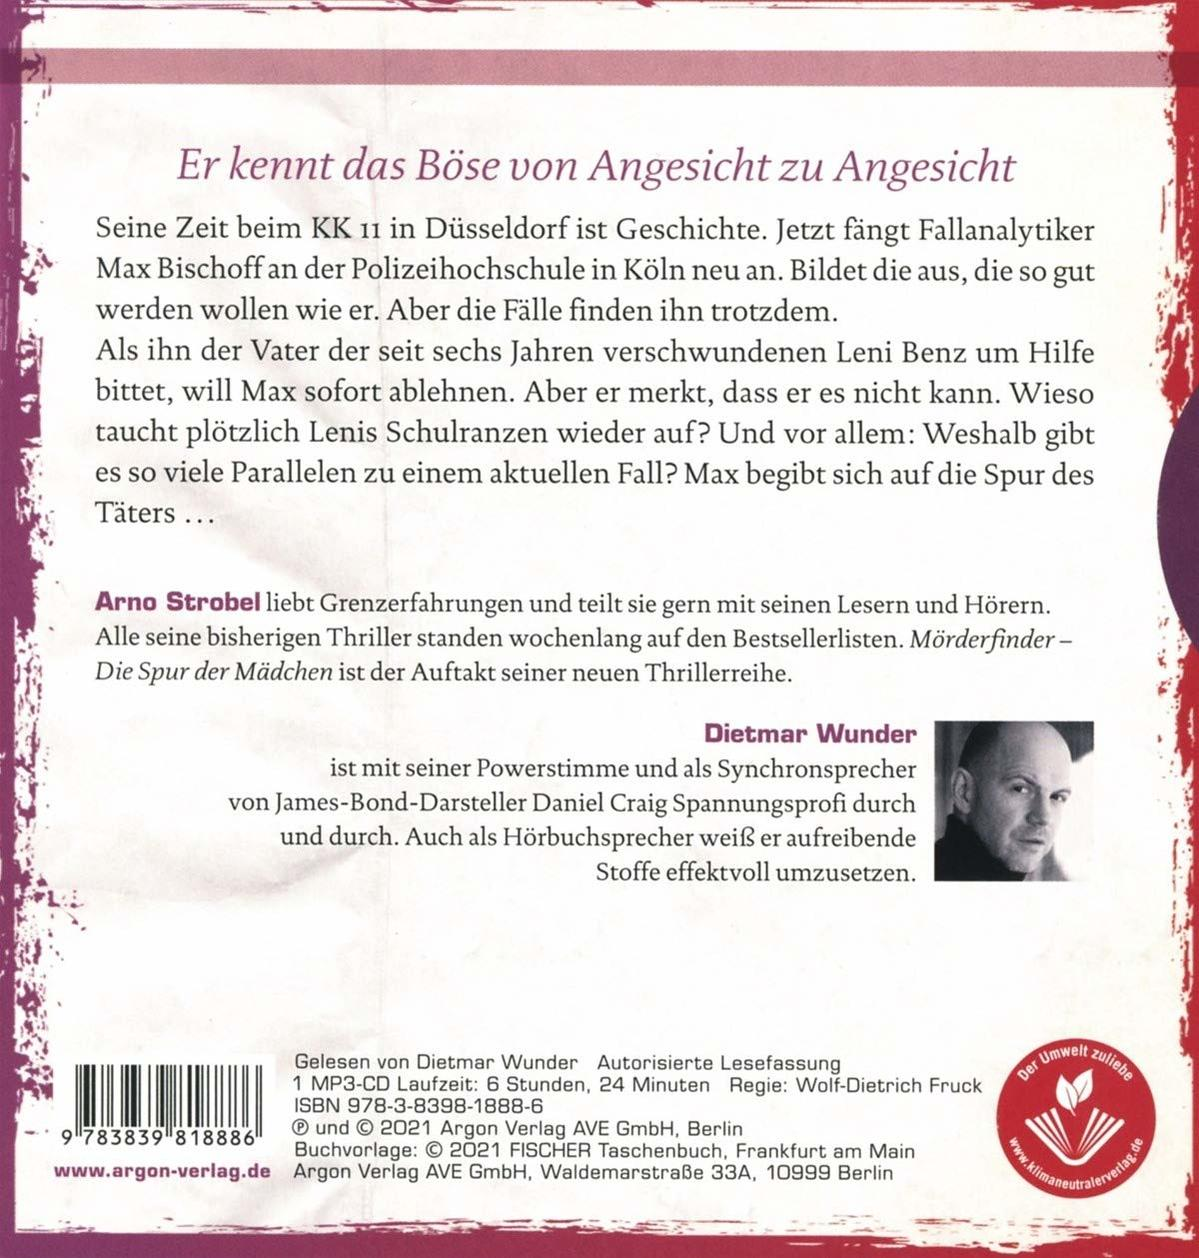 Dietmar Wunder - Mörderfinder - Die Spur - der Mädchen (MP3-CD)